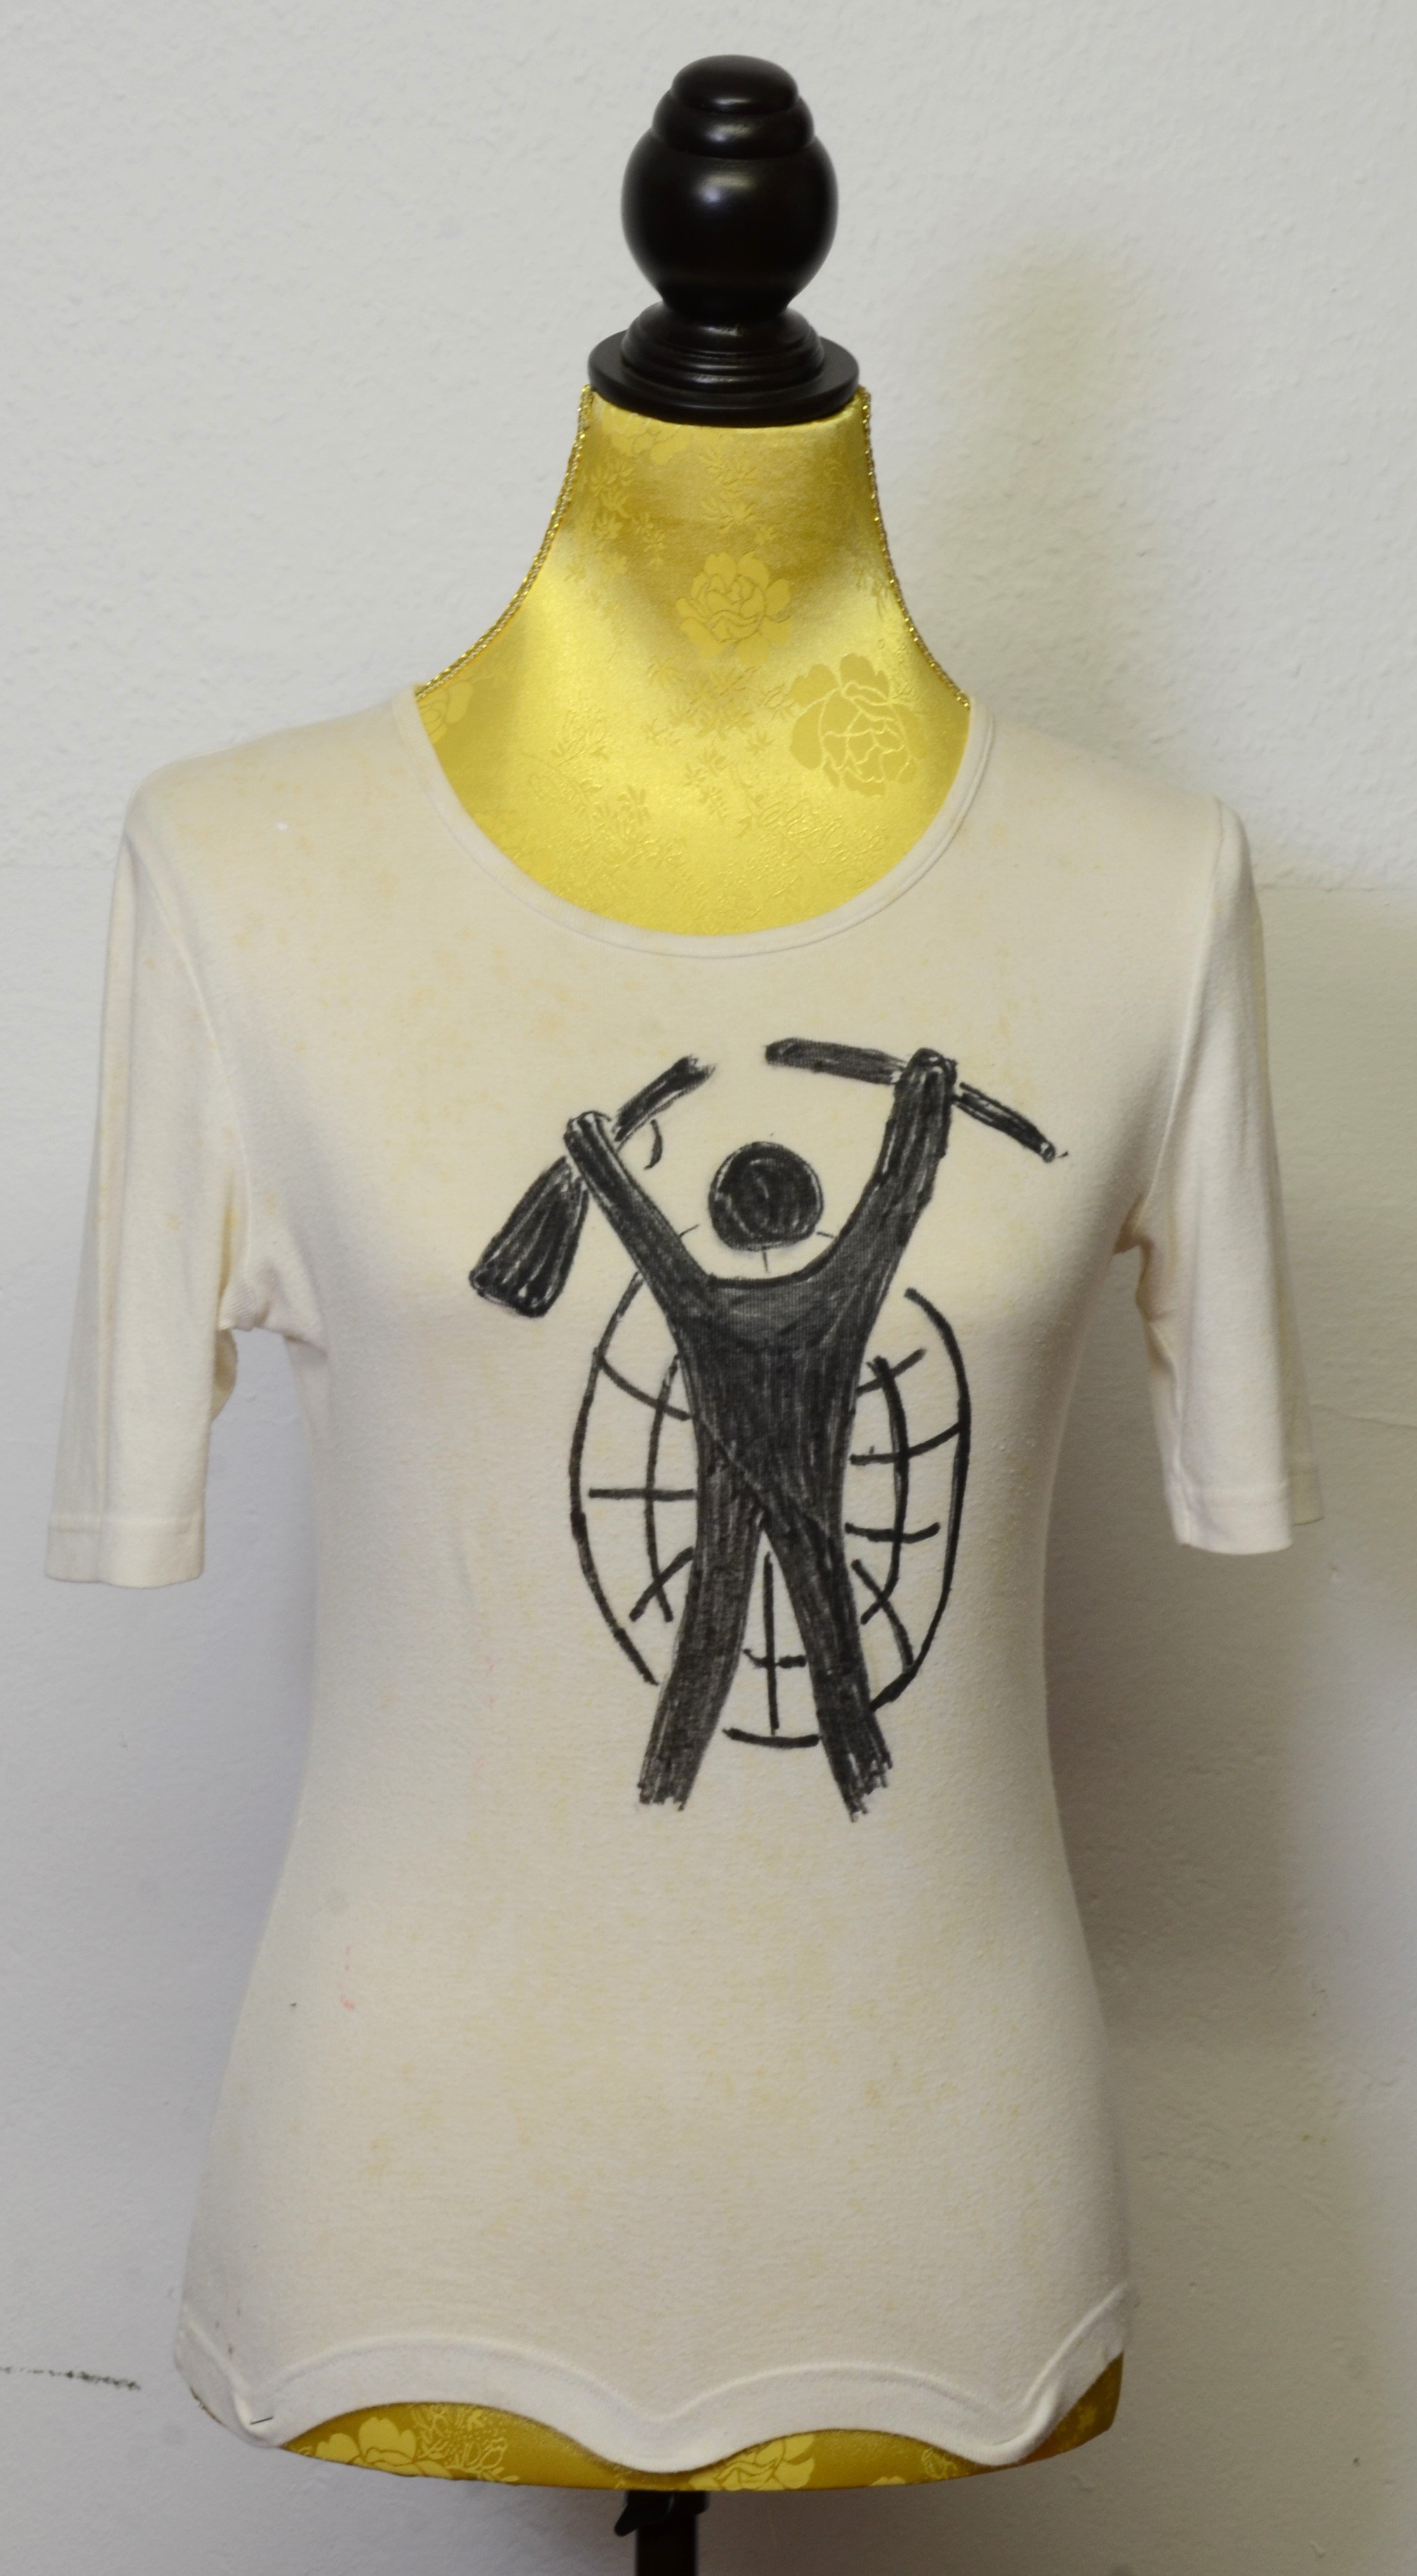 T-Shirt von Gisela Freimark mit dem Motiv eines Mannes mit zerbrochenem Gewehr vor einer Weltkugel (DDR Geschichtsmuseum im Dokumentationszentrum Perleberg CC BY-SA)